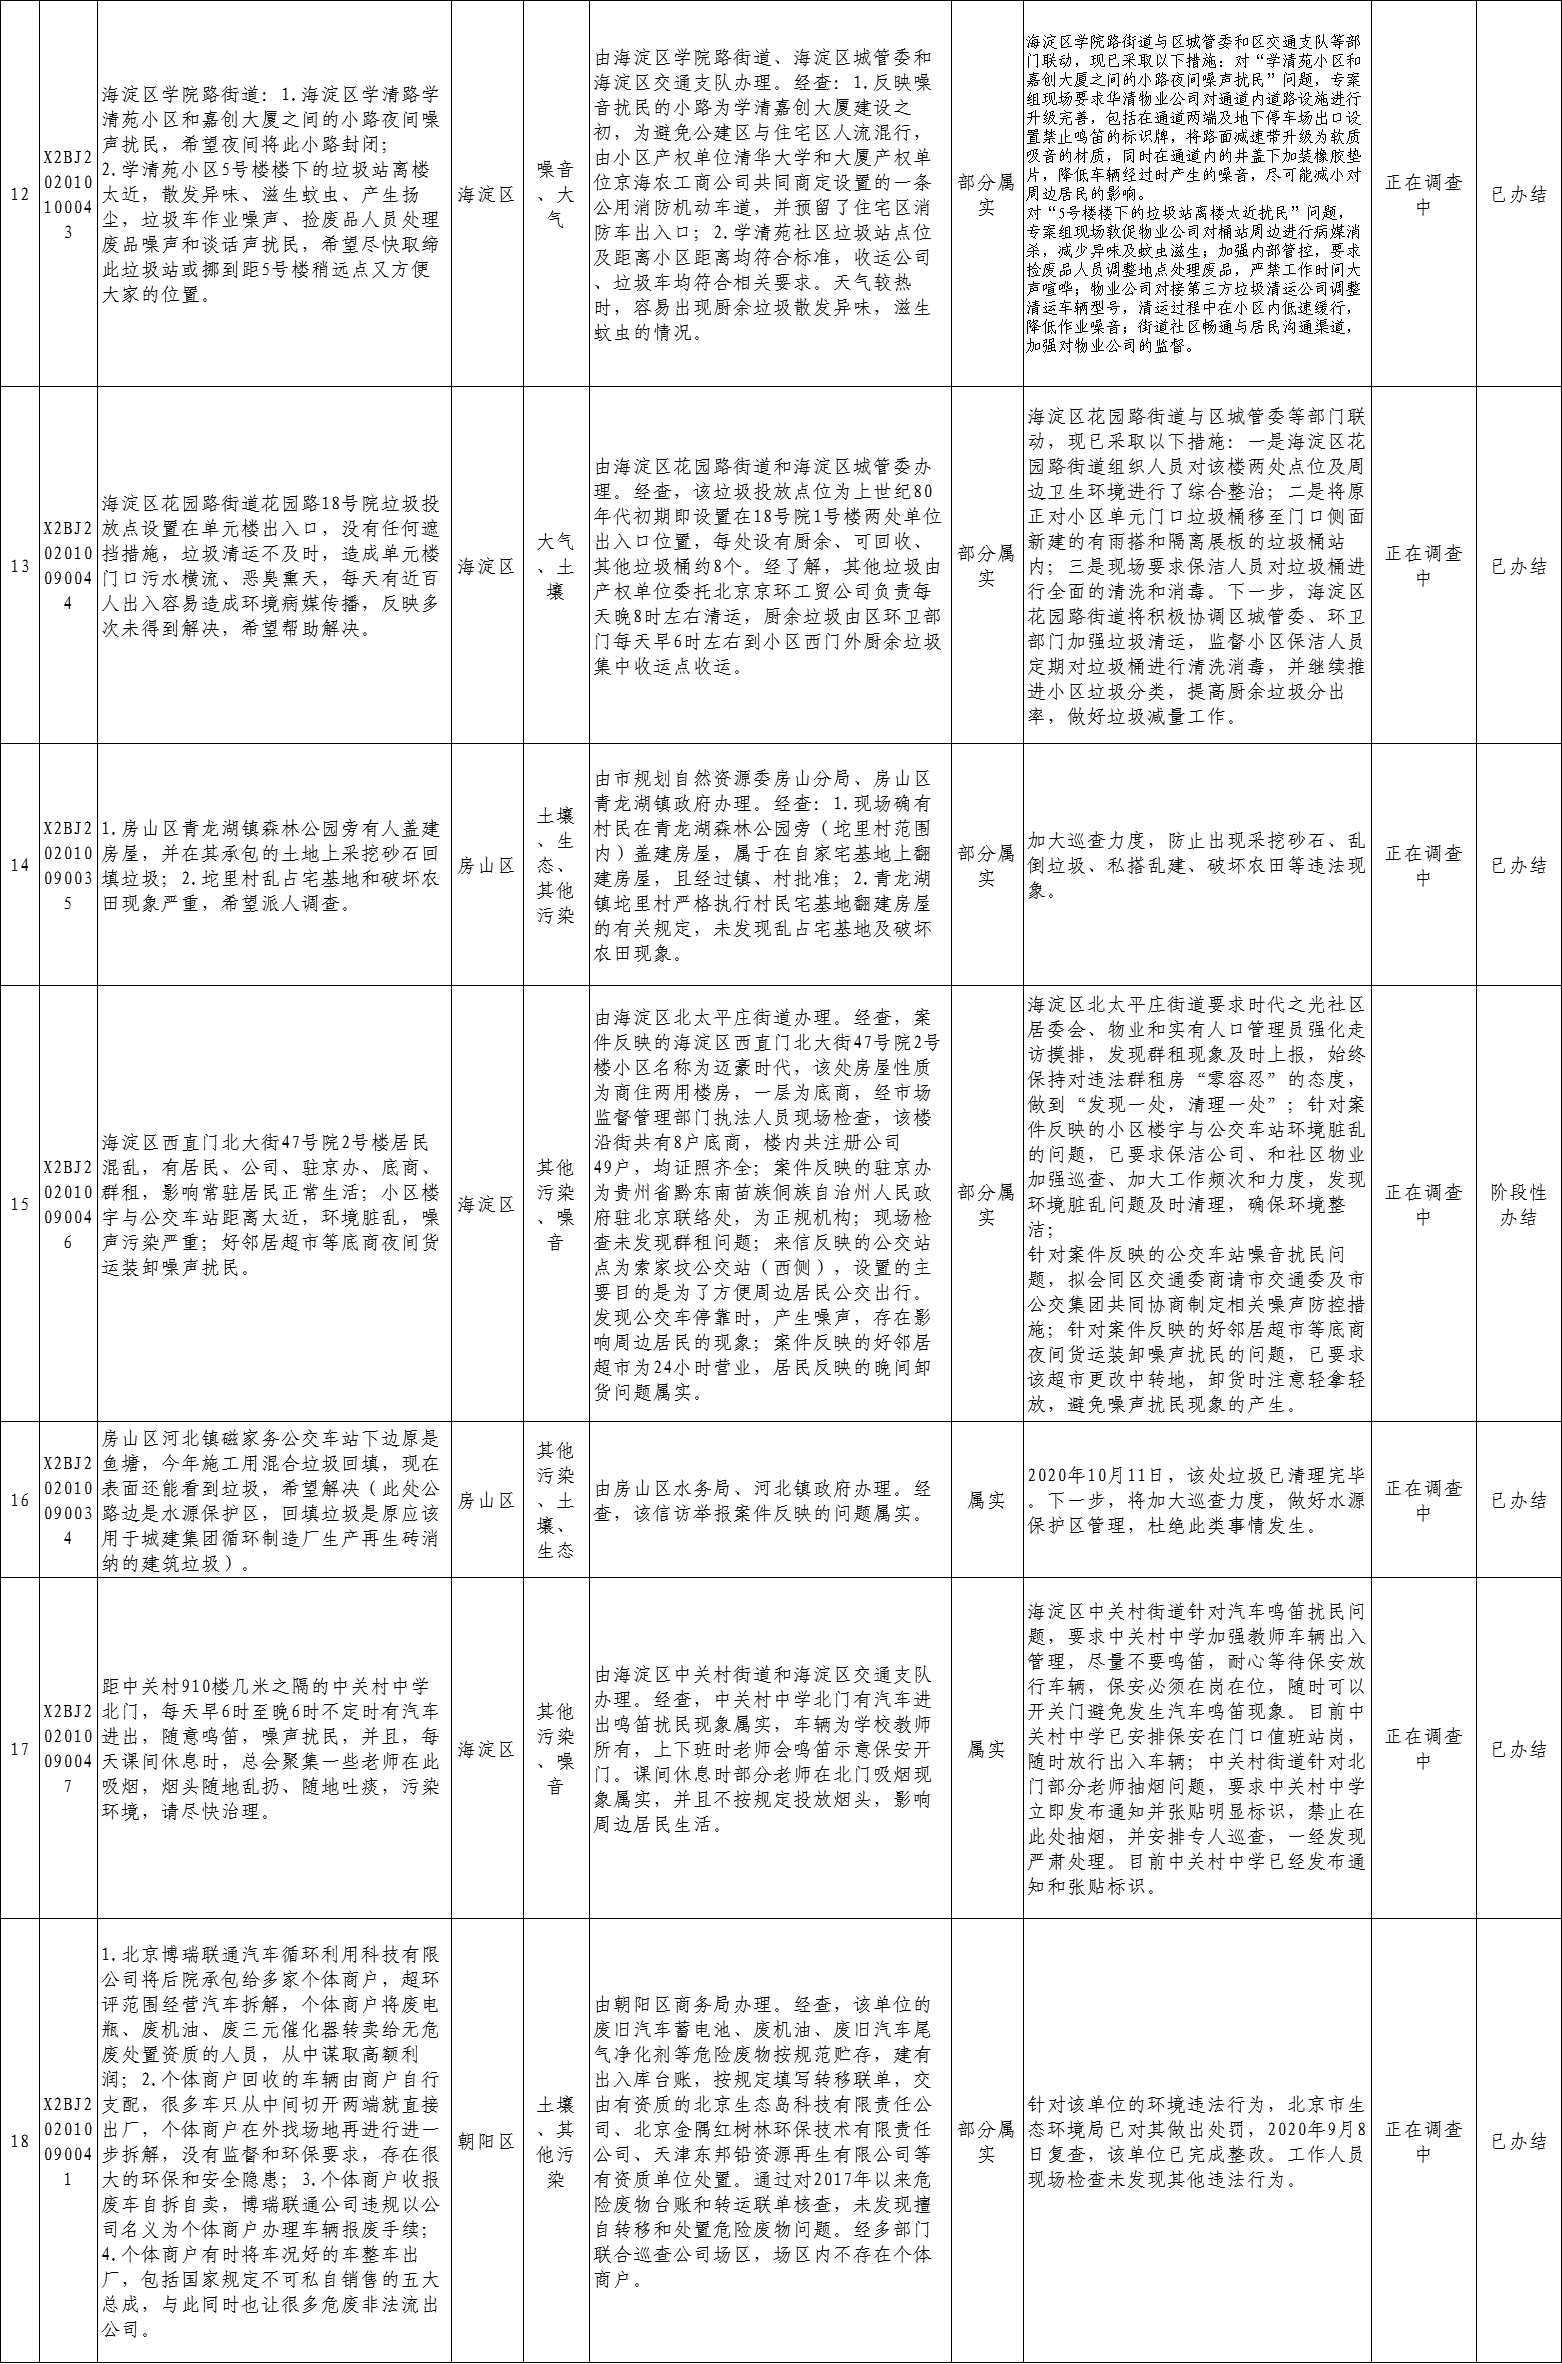 北京市群众信访举报转办和边督边改公开情况一览表(第三十二批)